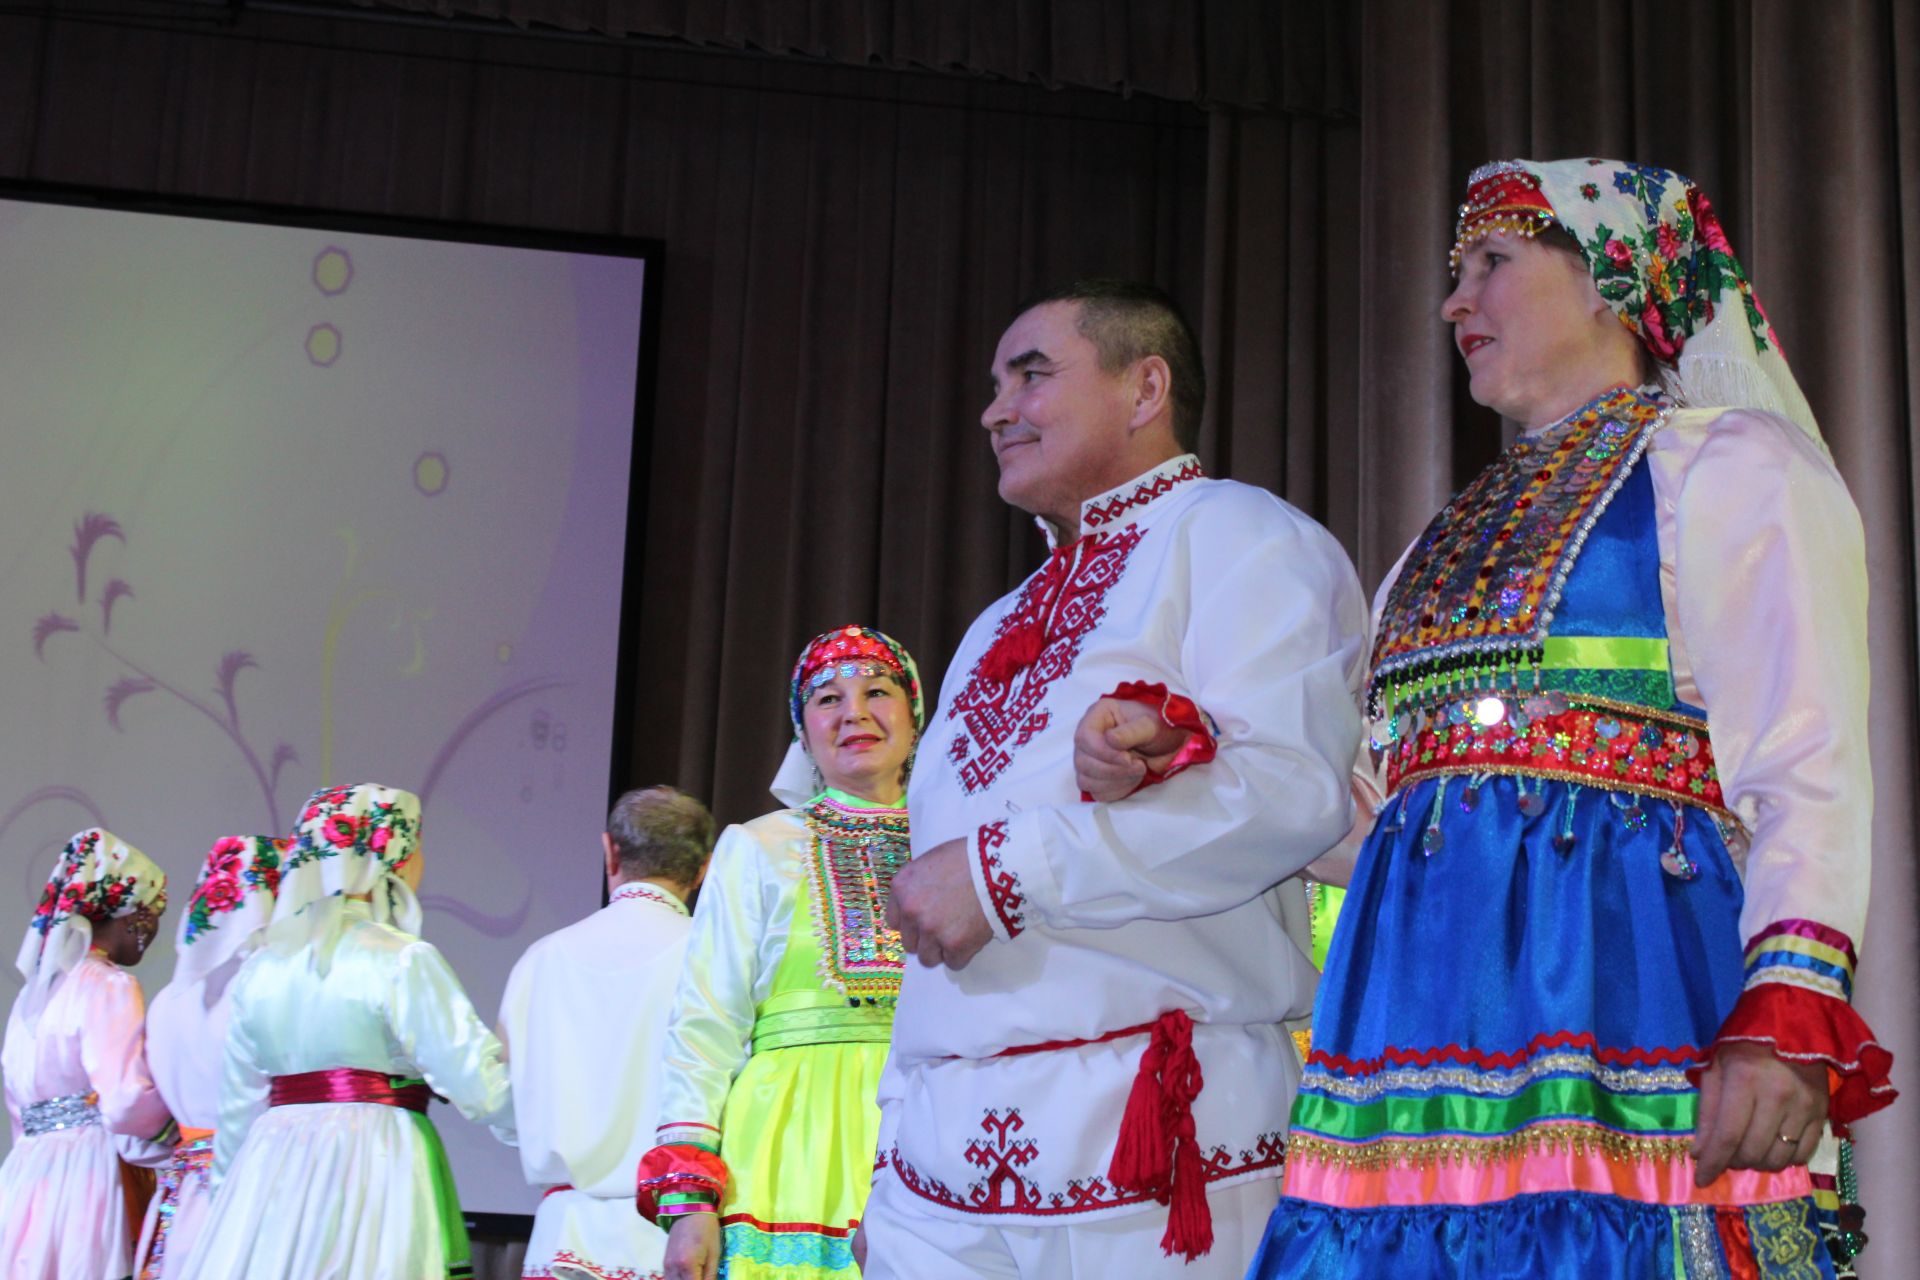 Праздничный концерт - 100 лет со дня образования ТАССР